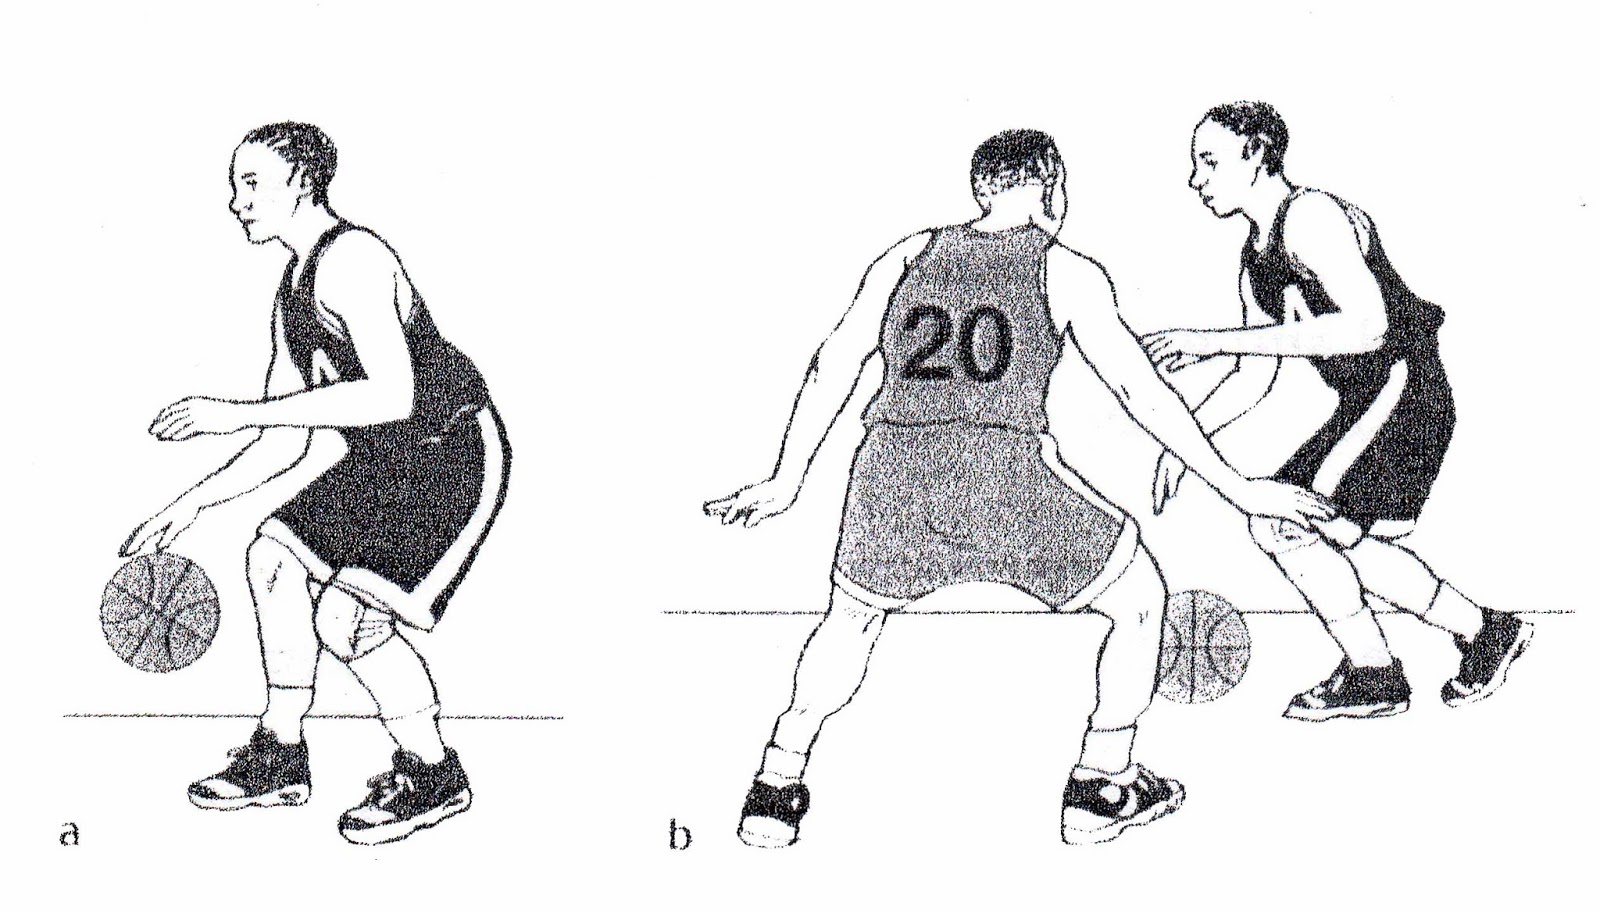 Apa Yang Dimaksud Dengan Gerakan Dribbling Dalam Permainan Bola Basket